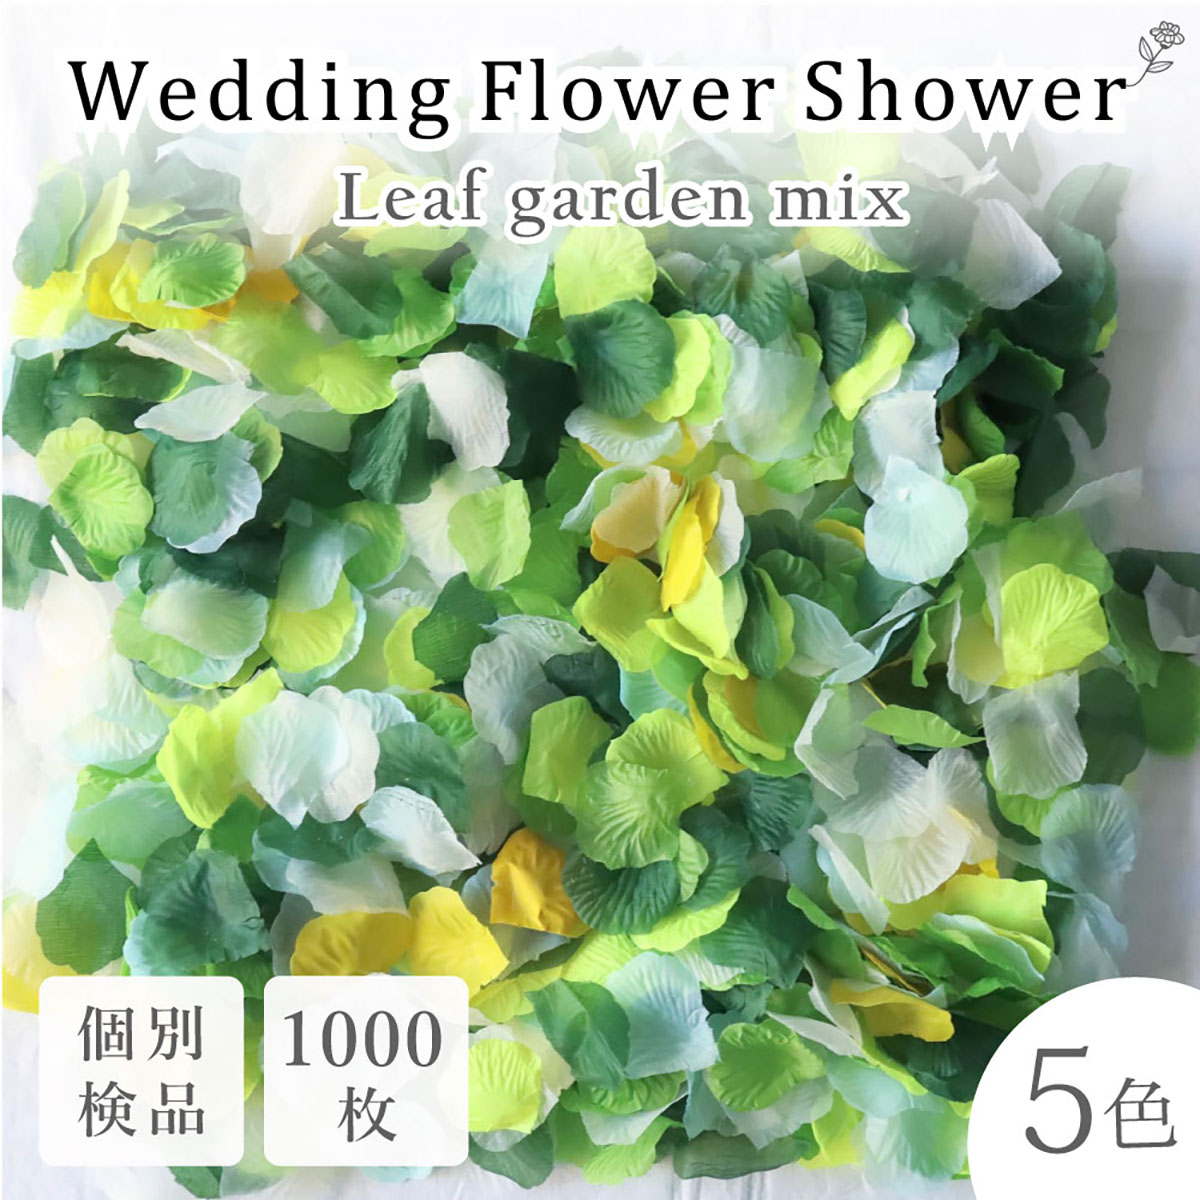 正規認証品!新規格 4色セット フラワーシャワー 1000枚 花びら 造花 バラ ブライダル 結婚式